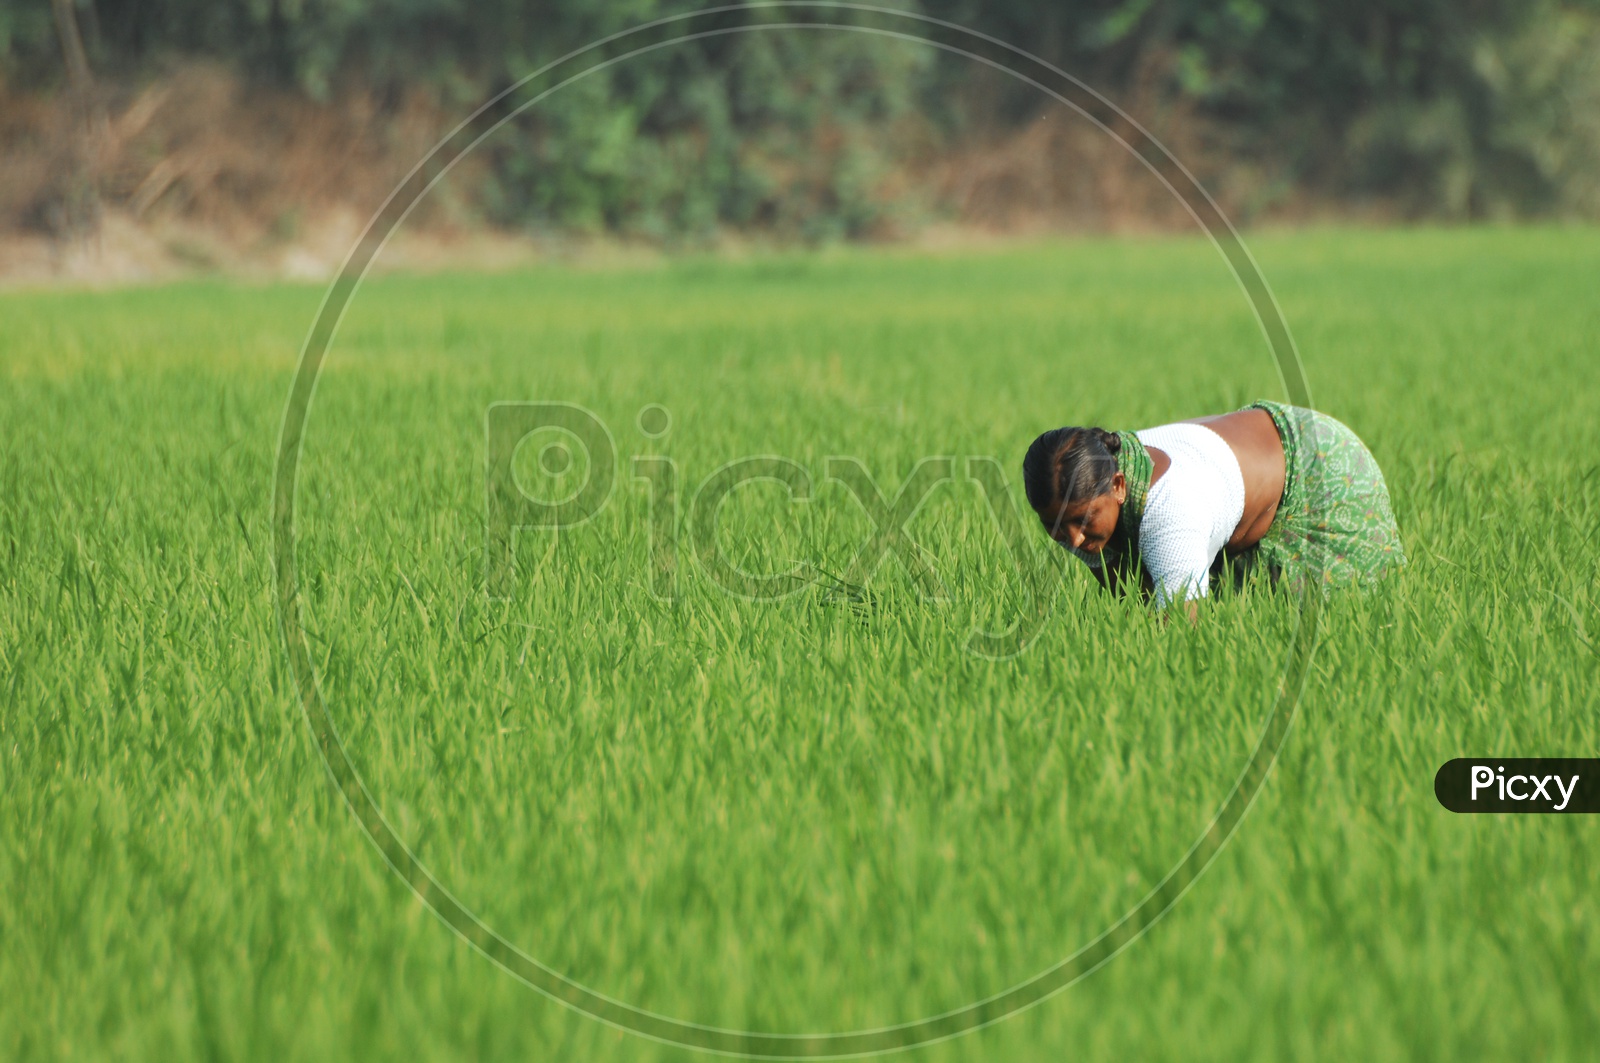 Women  working in paddy fields